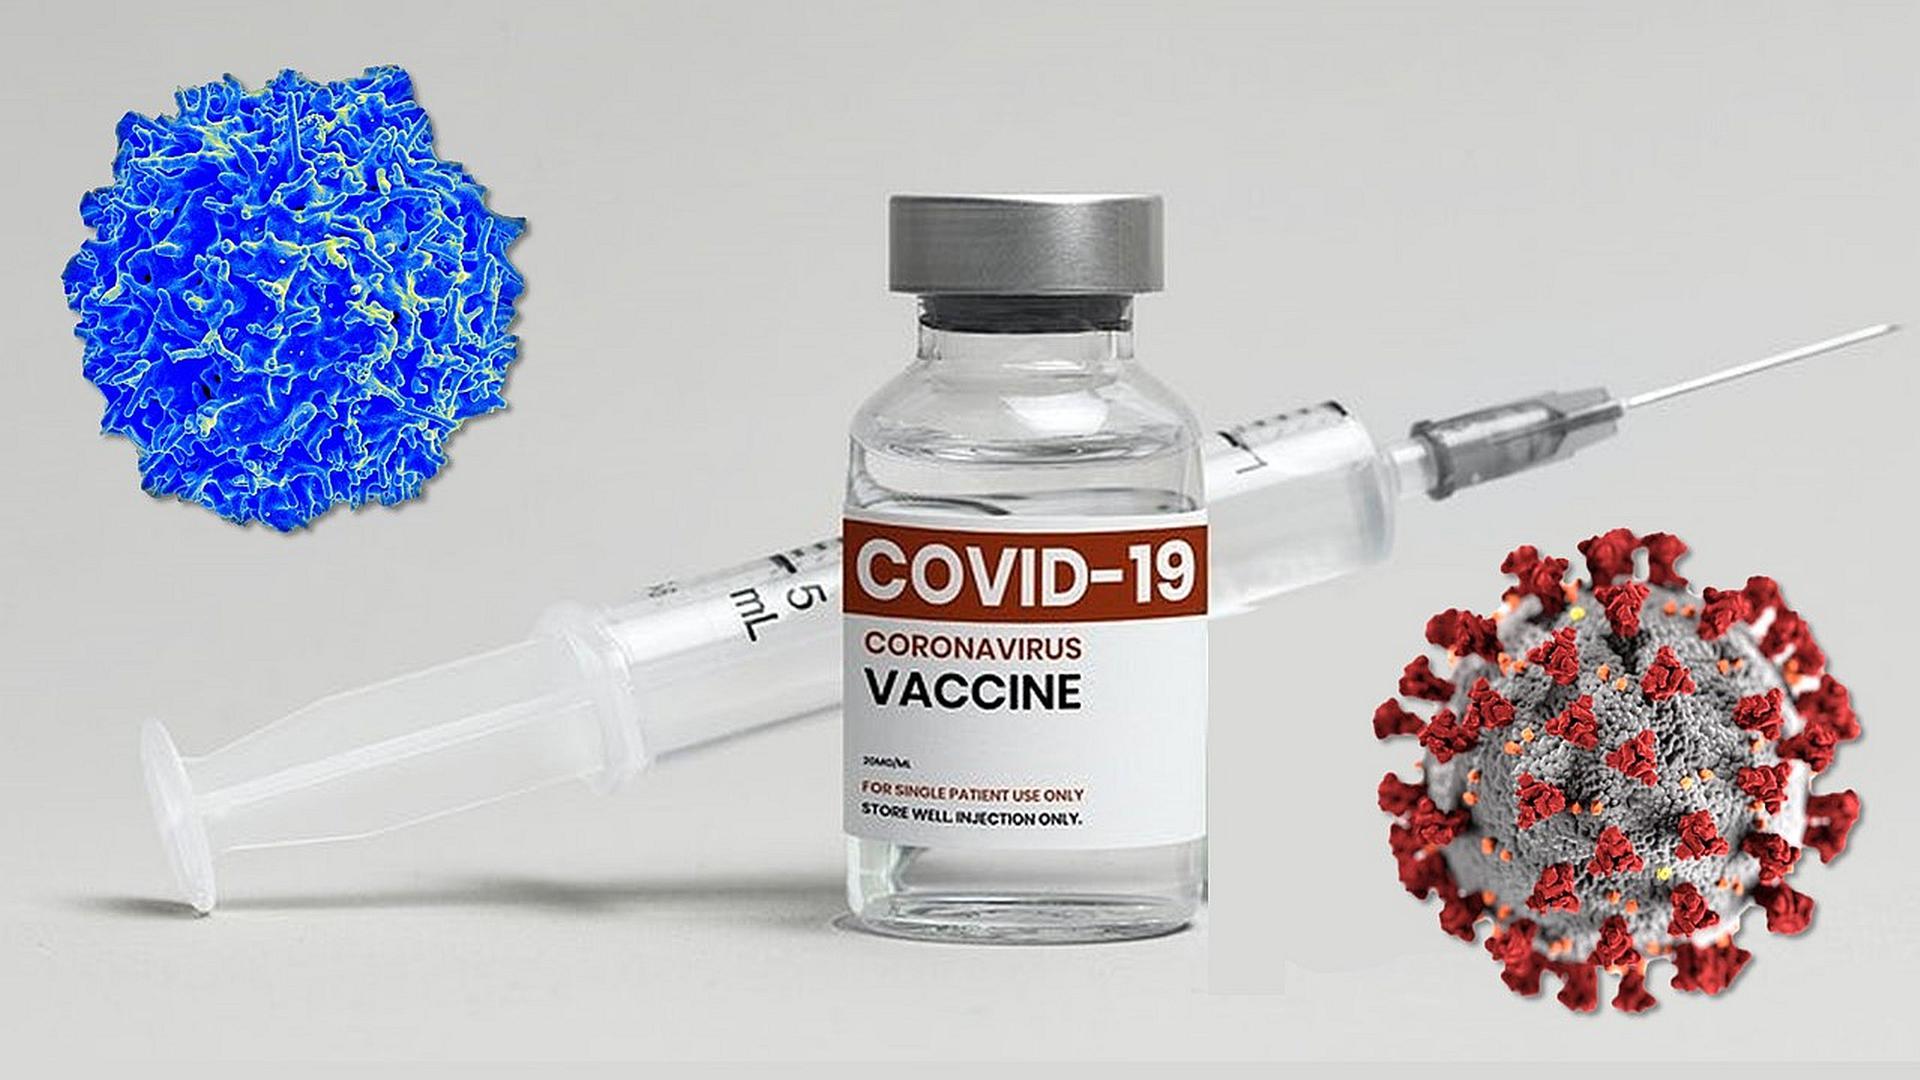 जिन सभी लोगों ने लगवा ली कोरोना वैक्सीन, उनके लिए बने ये लोग जान के दुश्मन, यह स्टडी में हुआ है बड़ा खुलासा